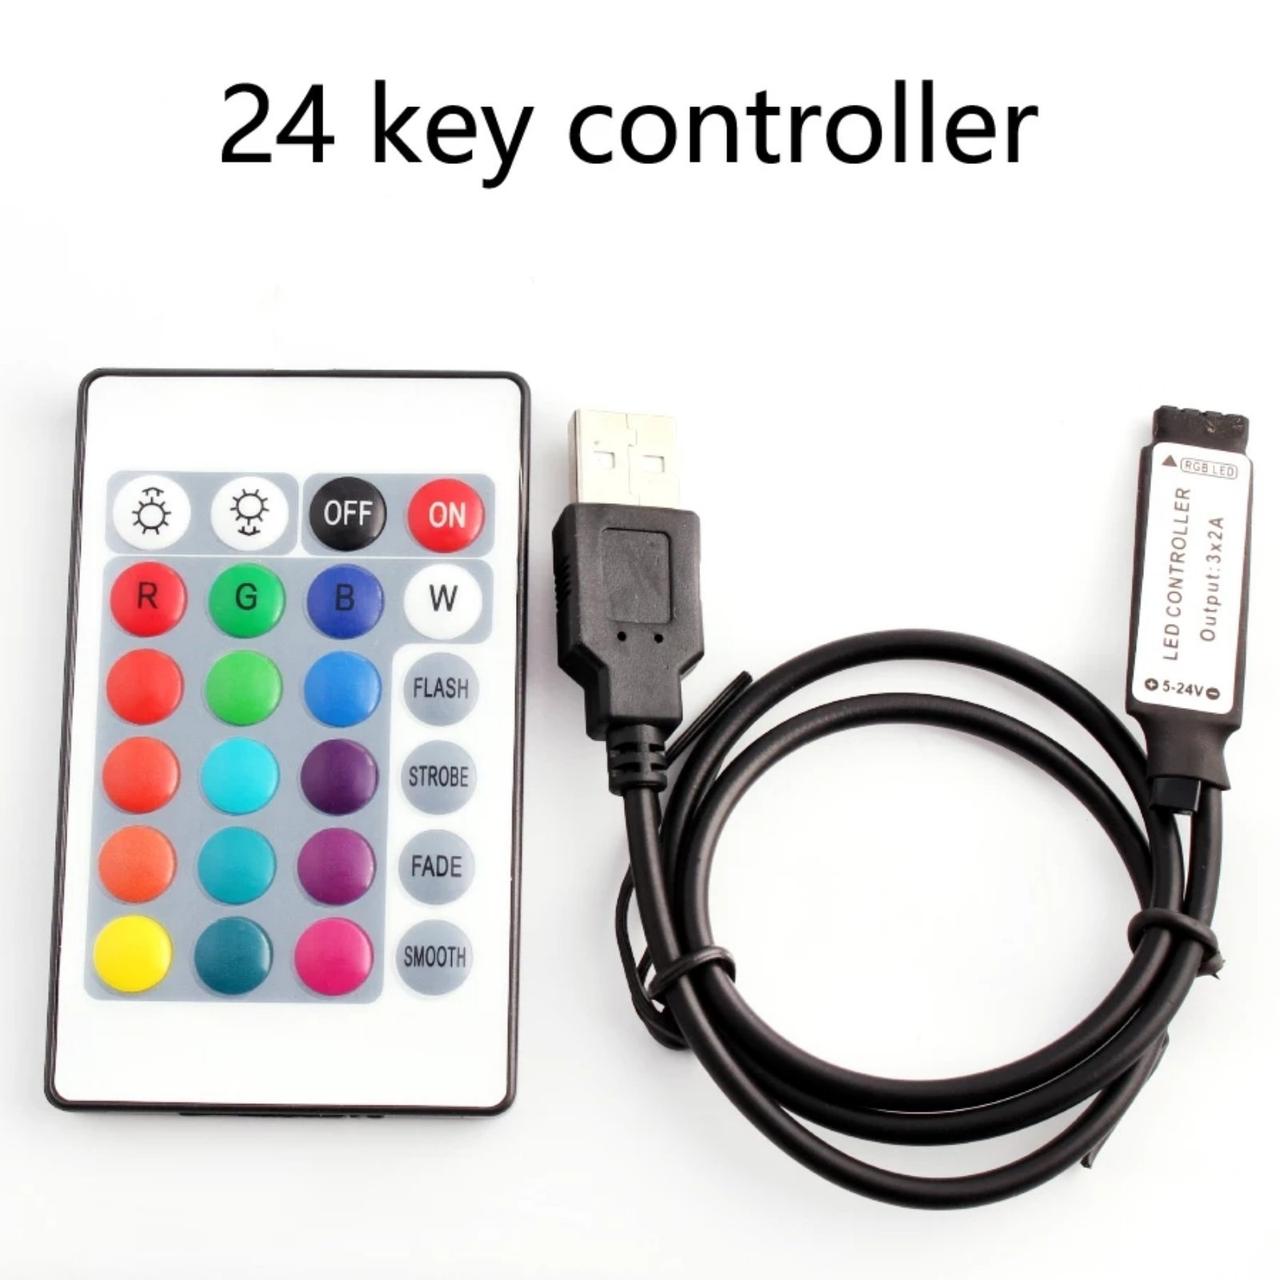 Контролер RGB 5 В із пультом ІЧ, інфрачервоний, 24 кнопки.